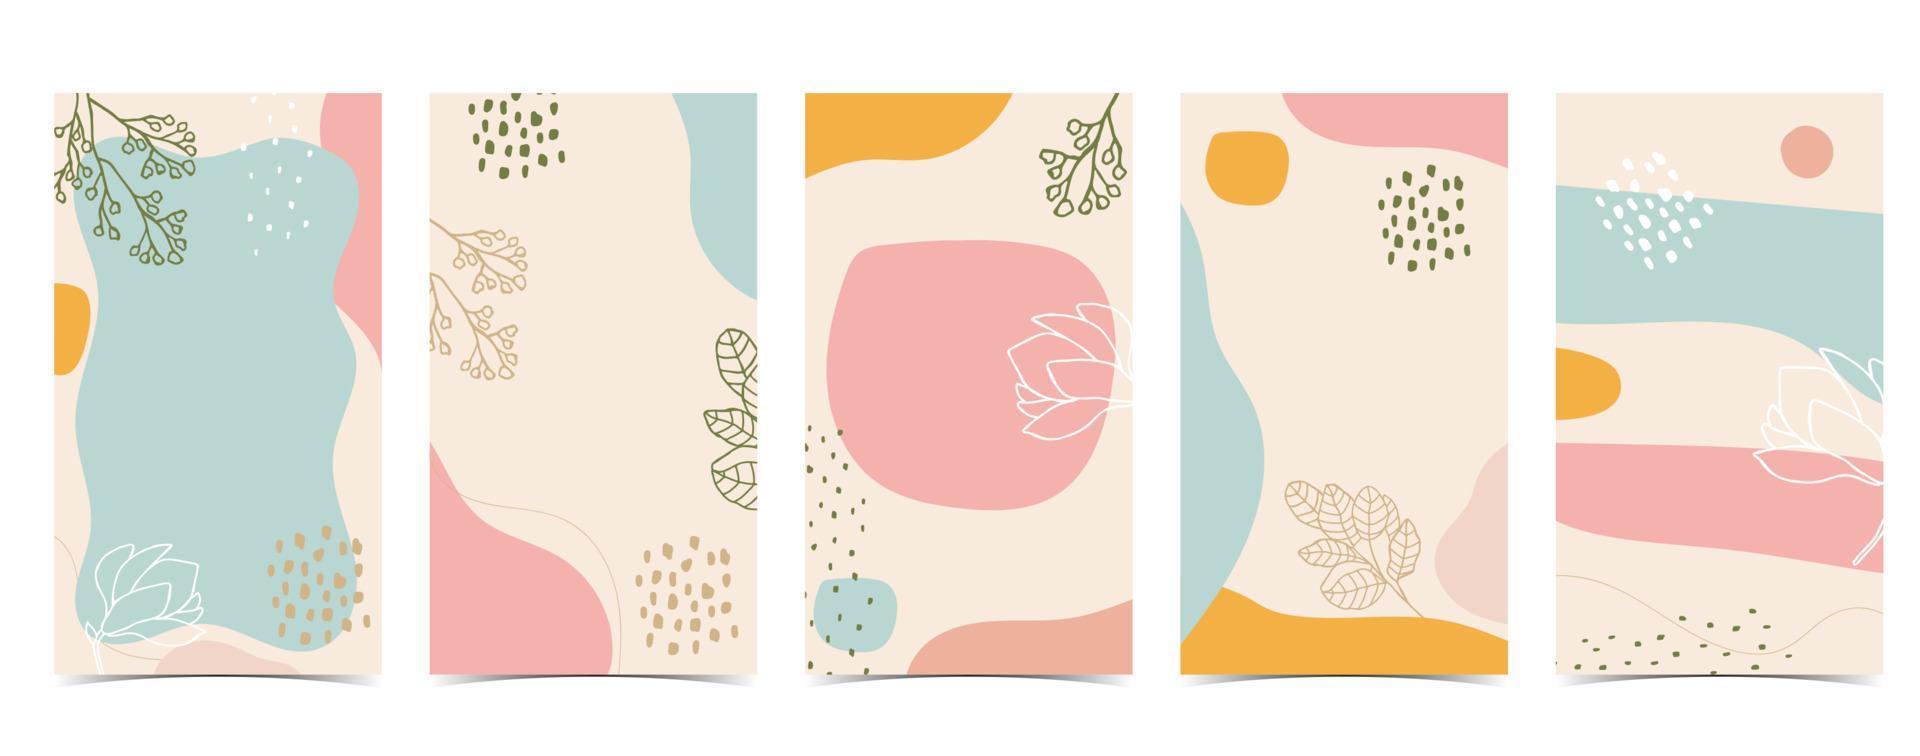 Color design background for social media with flower, leaf,shape vector